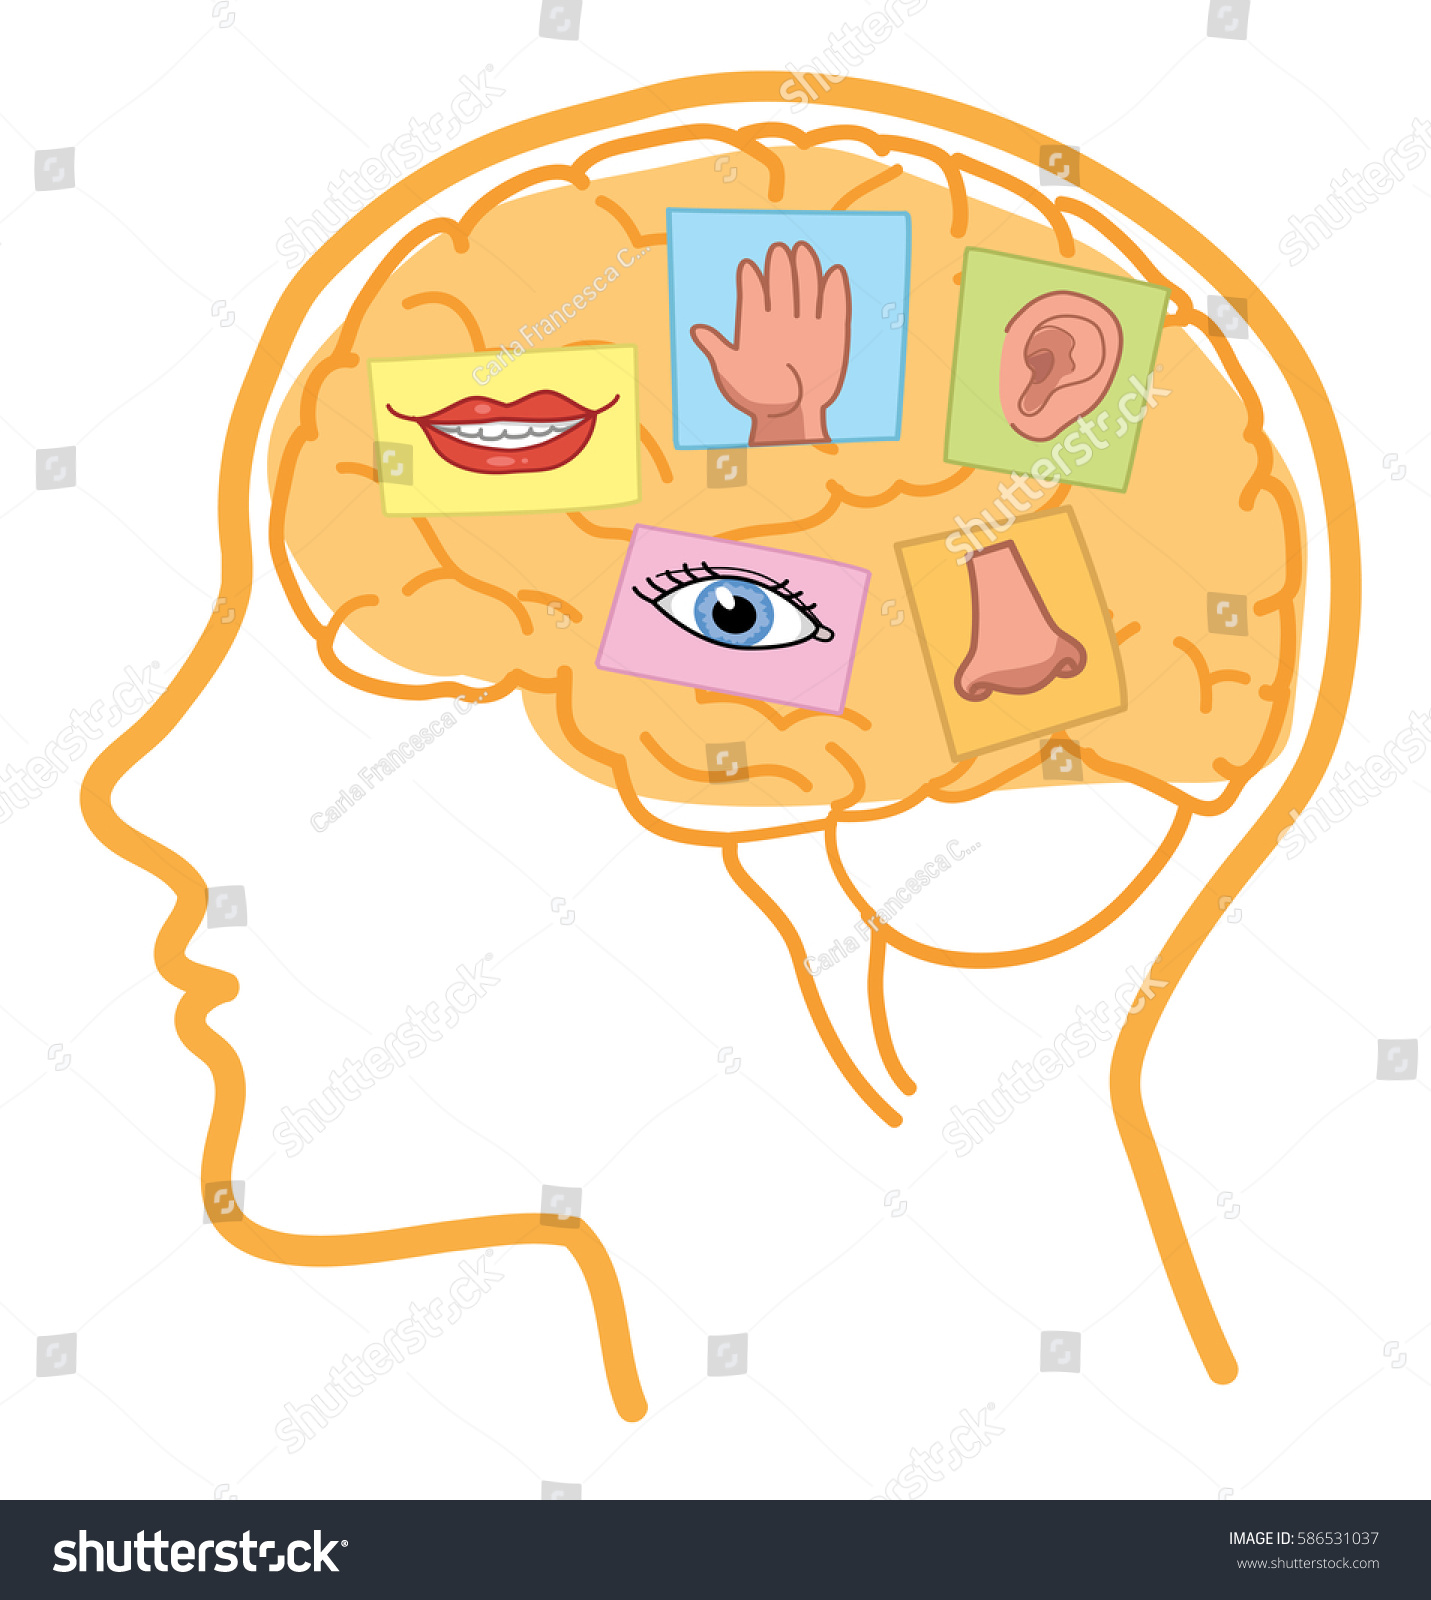 Brain sense. Мозг и органы чувств. Чувства обоняние осязание слух зрение. Связь органов чувств и мозга. Мозг и эмоции.